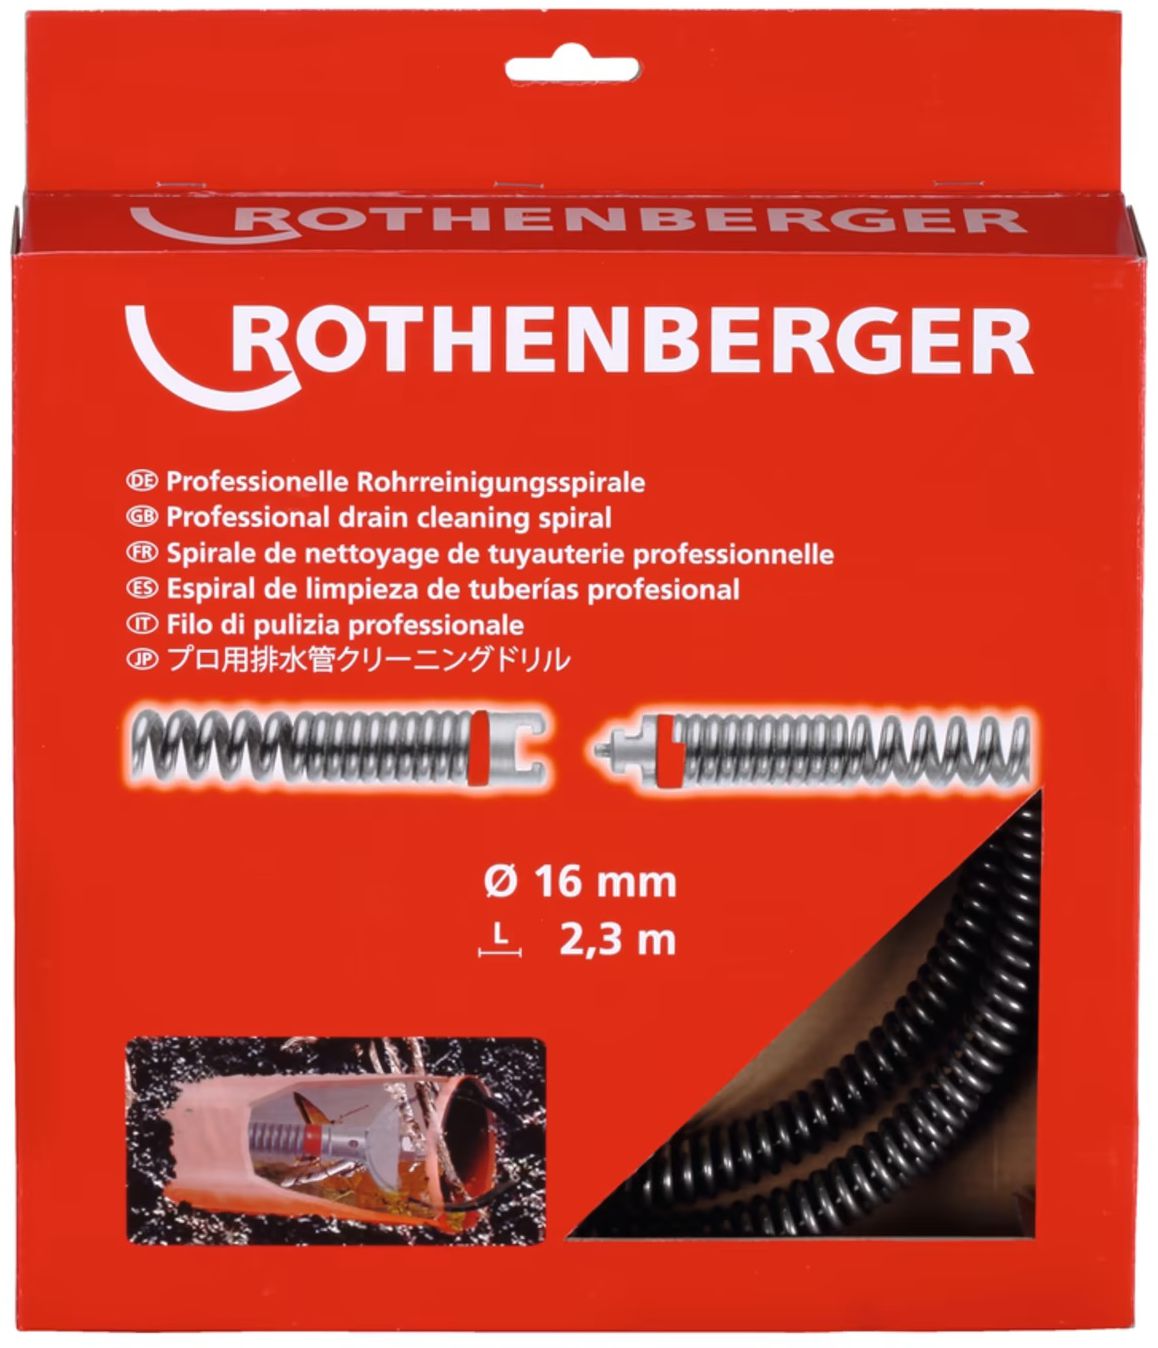 ROTHENBERGER Rohrreinigungs-Spiralen, Ø 16mm 7.2433, C8-NIC, L= 2.3m, mit Kstf-Seele - Sanitärwerkzeuge